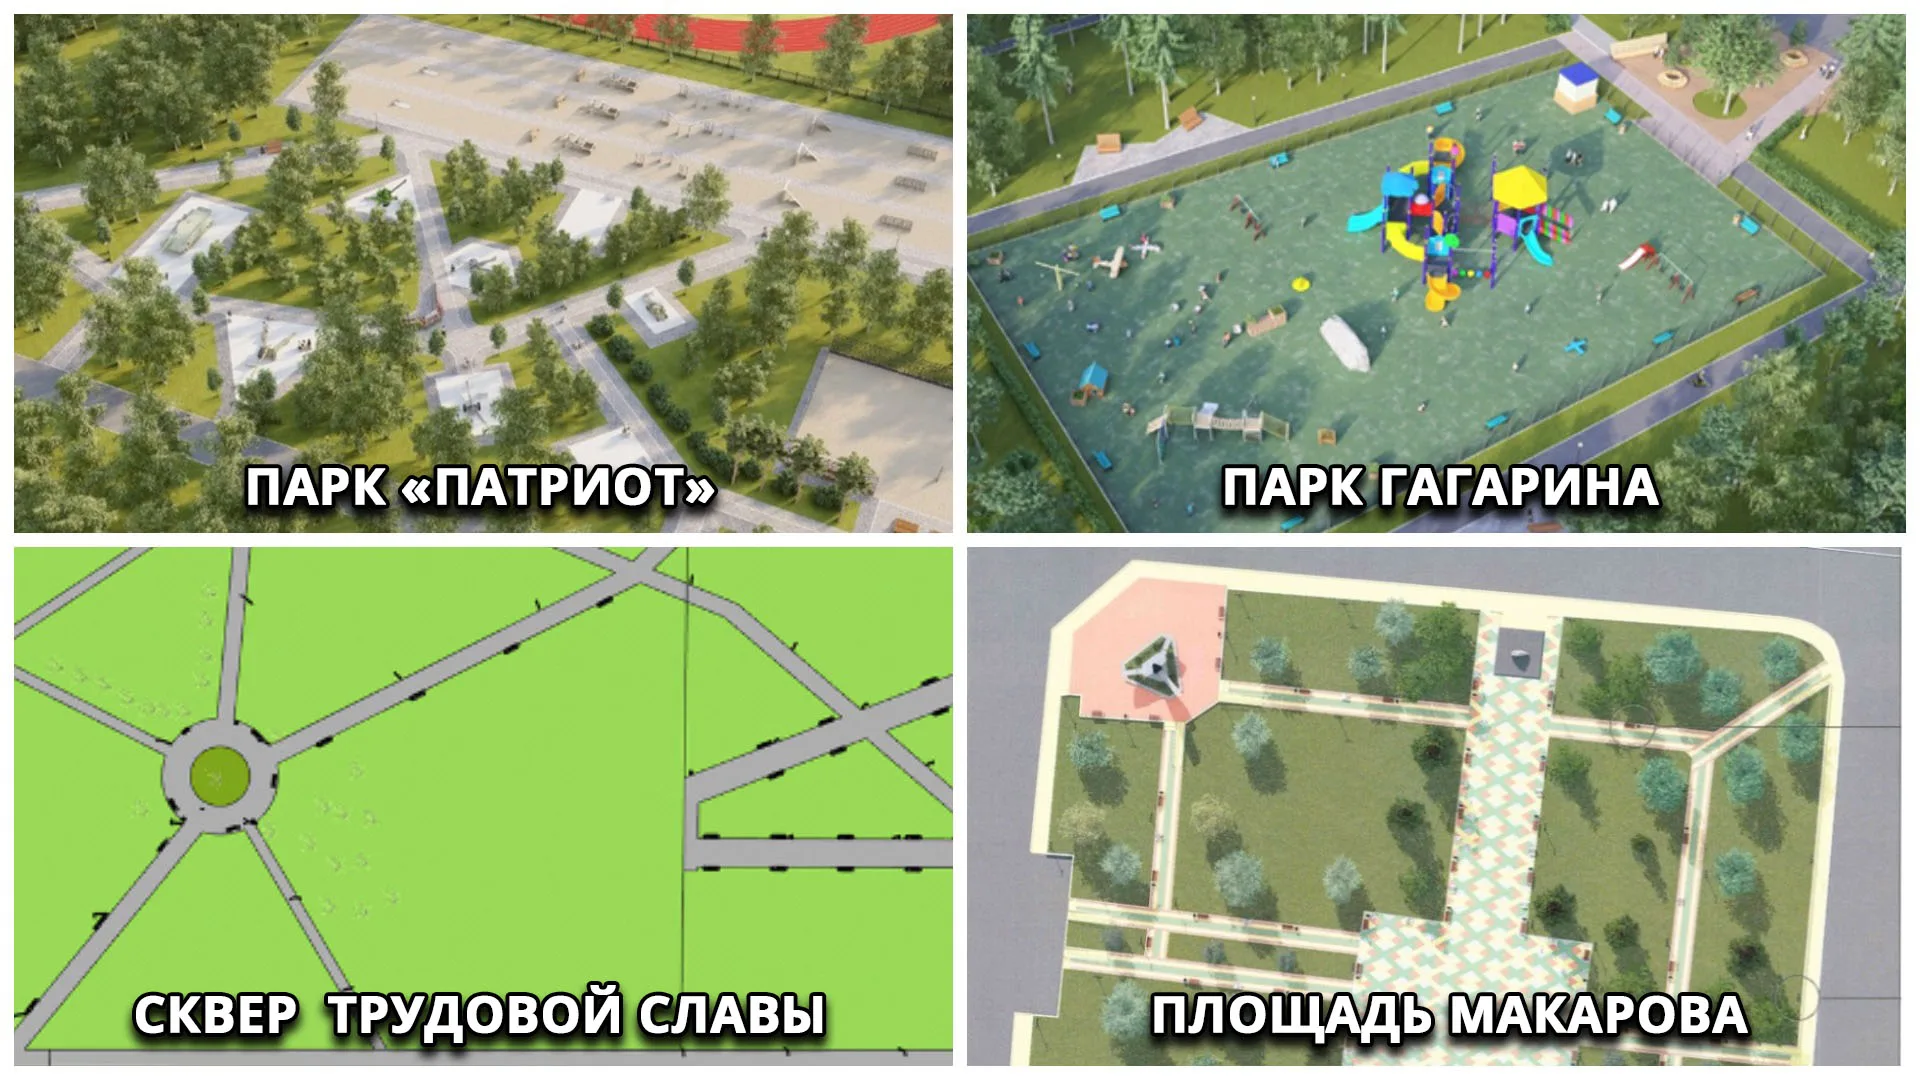 К благоустройству скверов и парков готовятся в мэрии Комсомольска